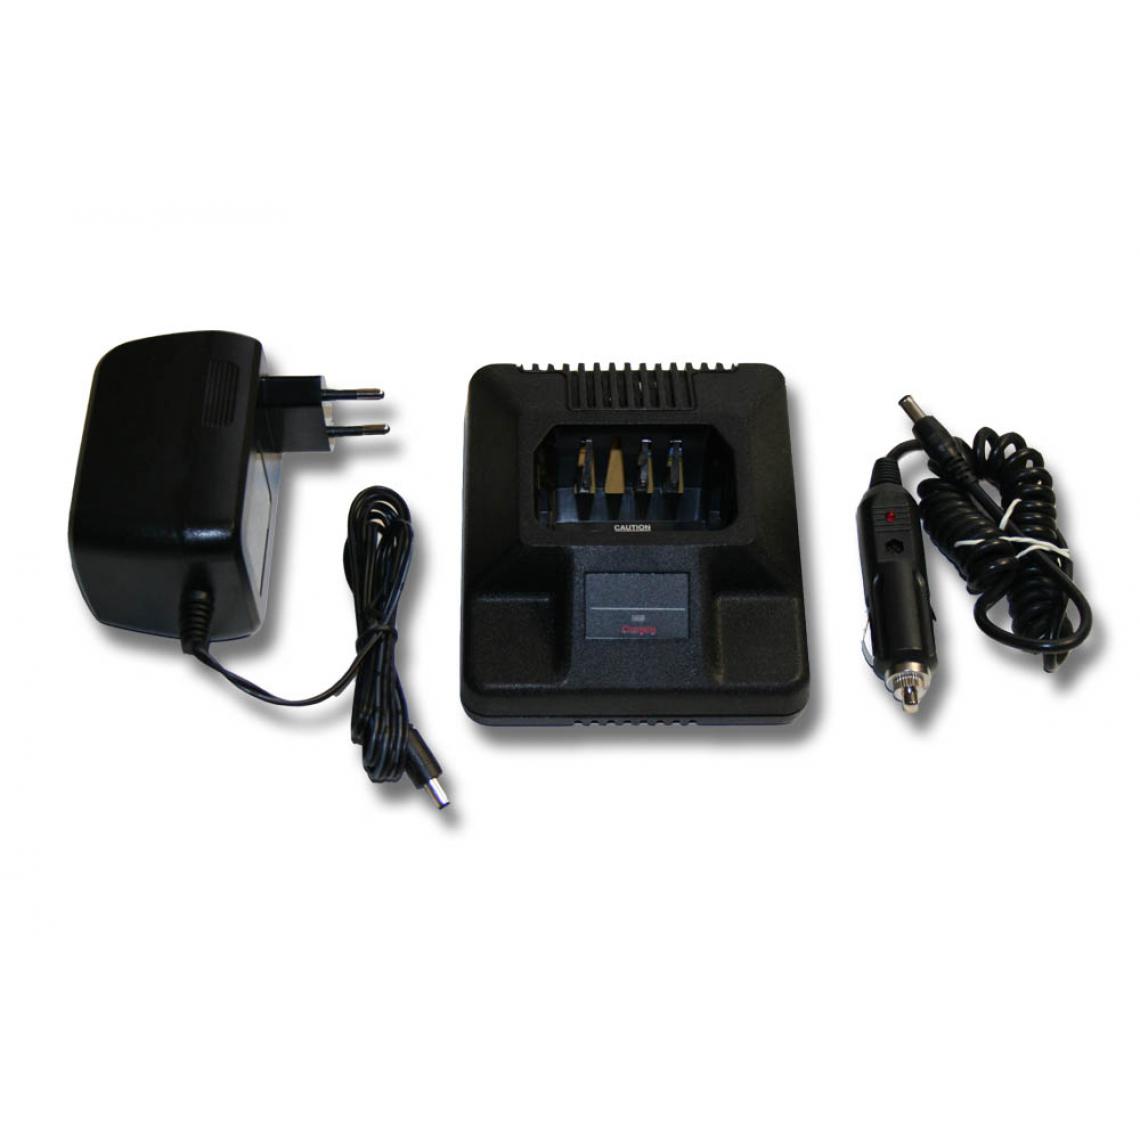 Vhbw - vhbw Chargeur de batterie compatible avec Motorola MTX638, P040 batterie de radio, talkie walkie (station, câble + prise allume-cigare) - Autres accessoires smartphone